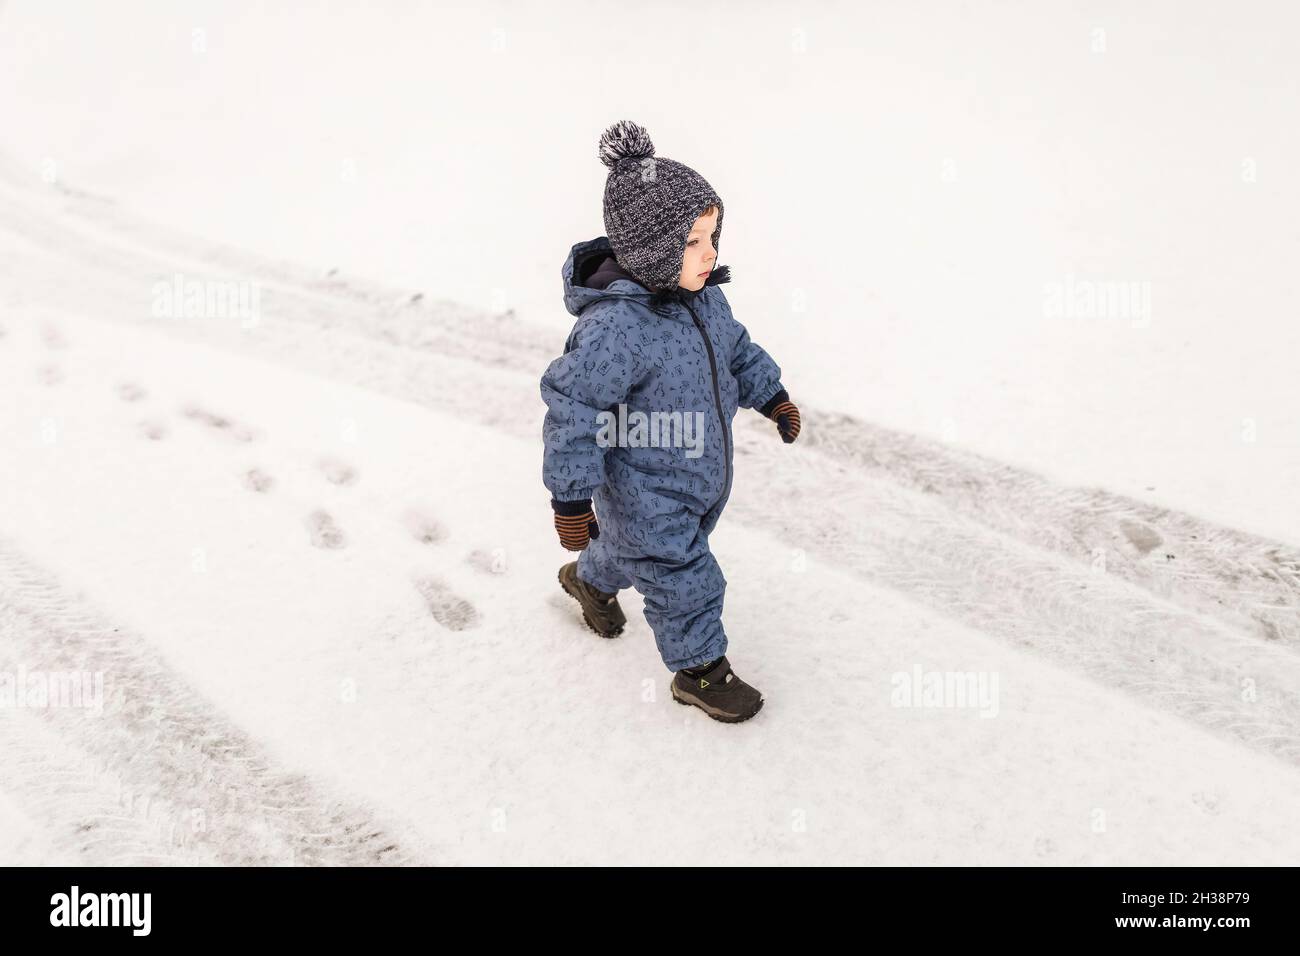 Kleiner Junge in blauem Einteiler, der selbstbewusst auf einem Schnee draußen läuft Stockfoto